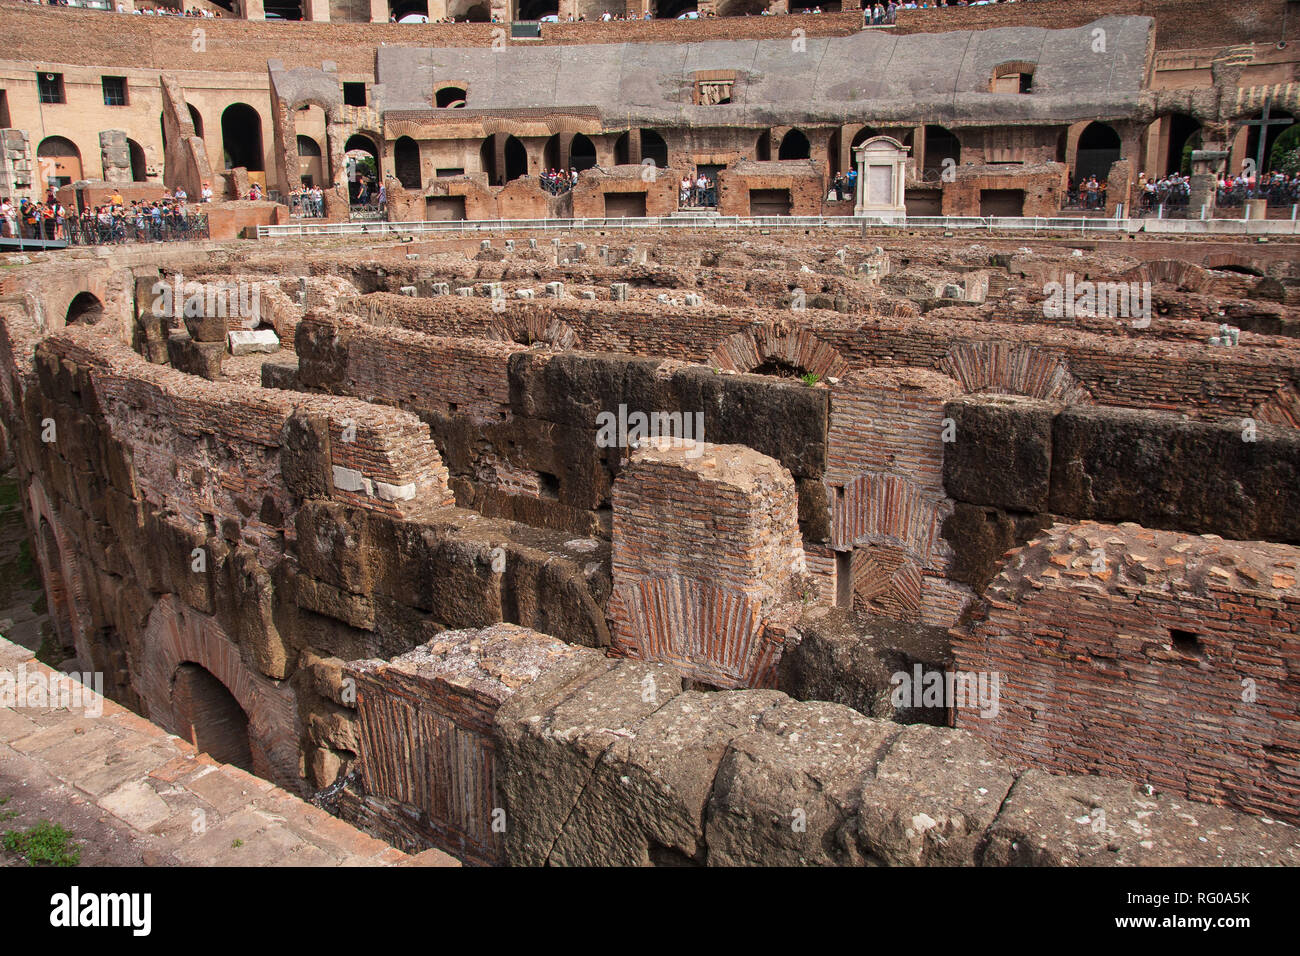 Interior of Colosseum Rome Stock Photo